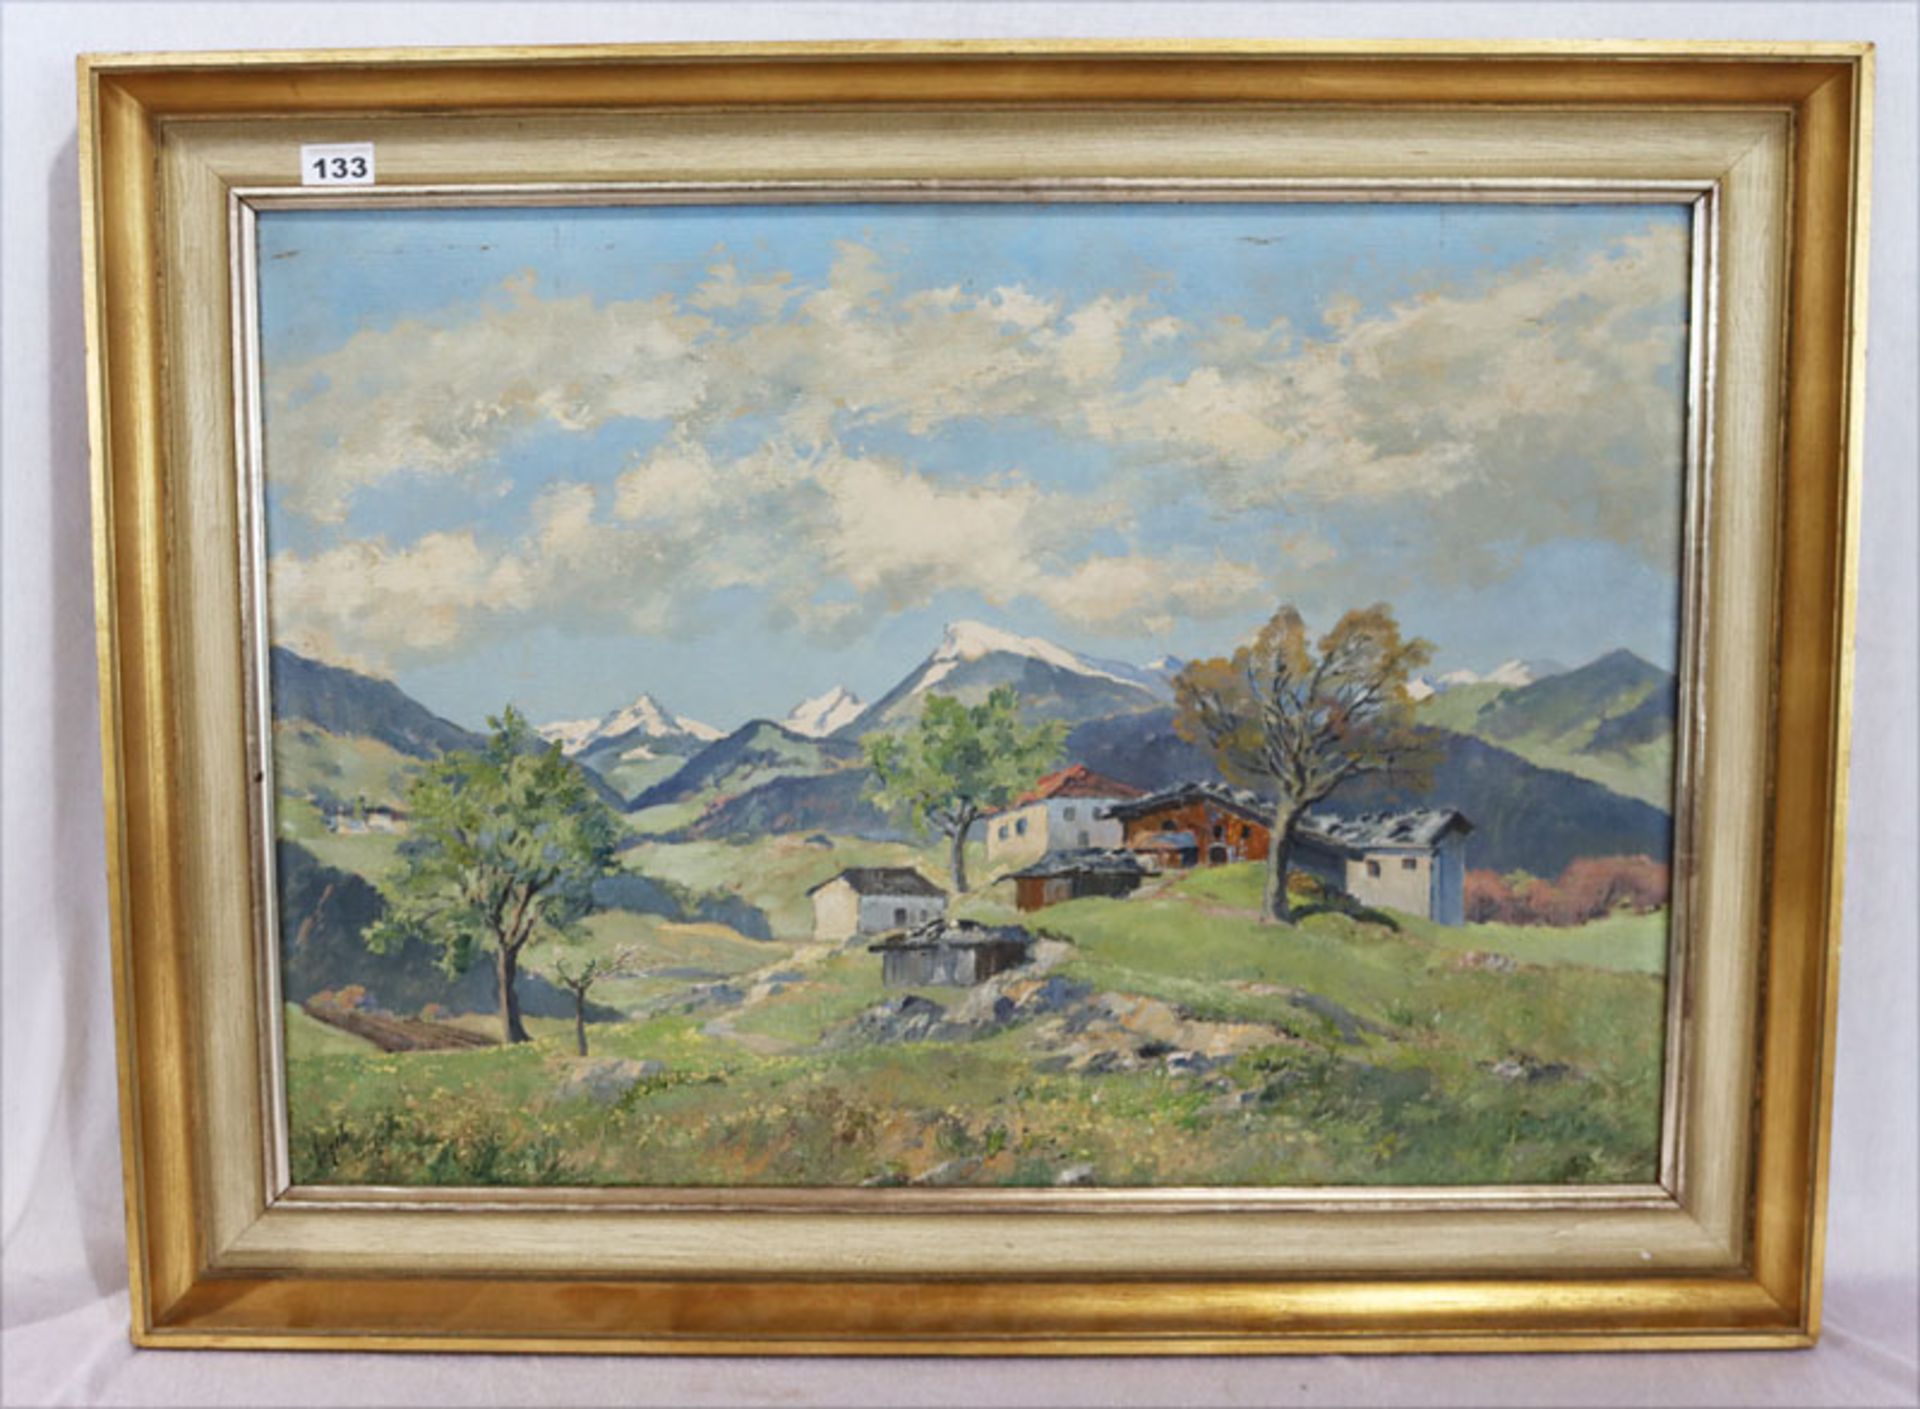 Gemälde ÖL/Malkarton 'Häuser im Hochgebirge', signiert Engels, gerahmt, Rahmen bestossen, incl.